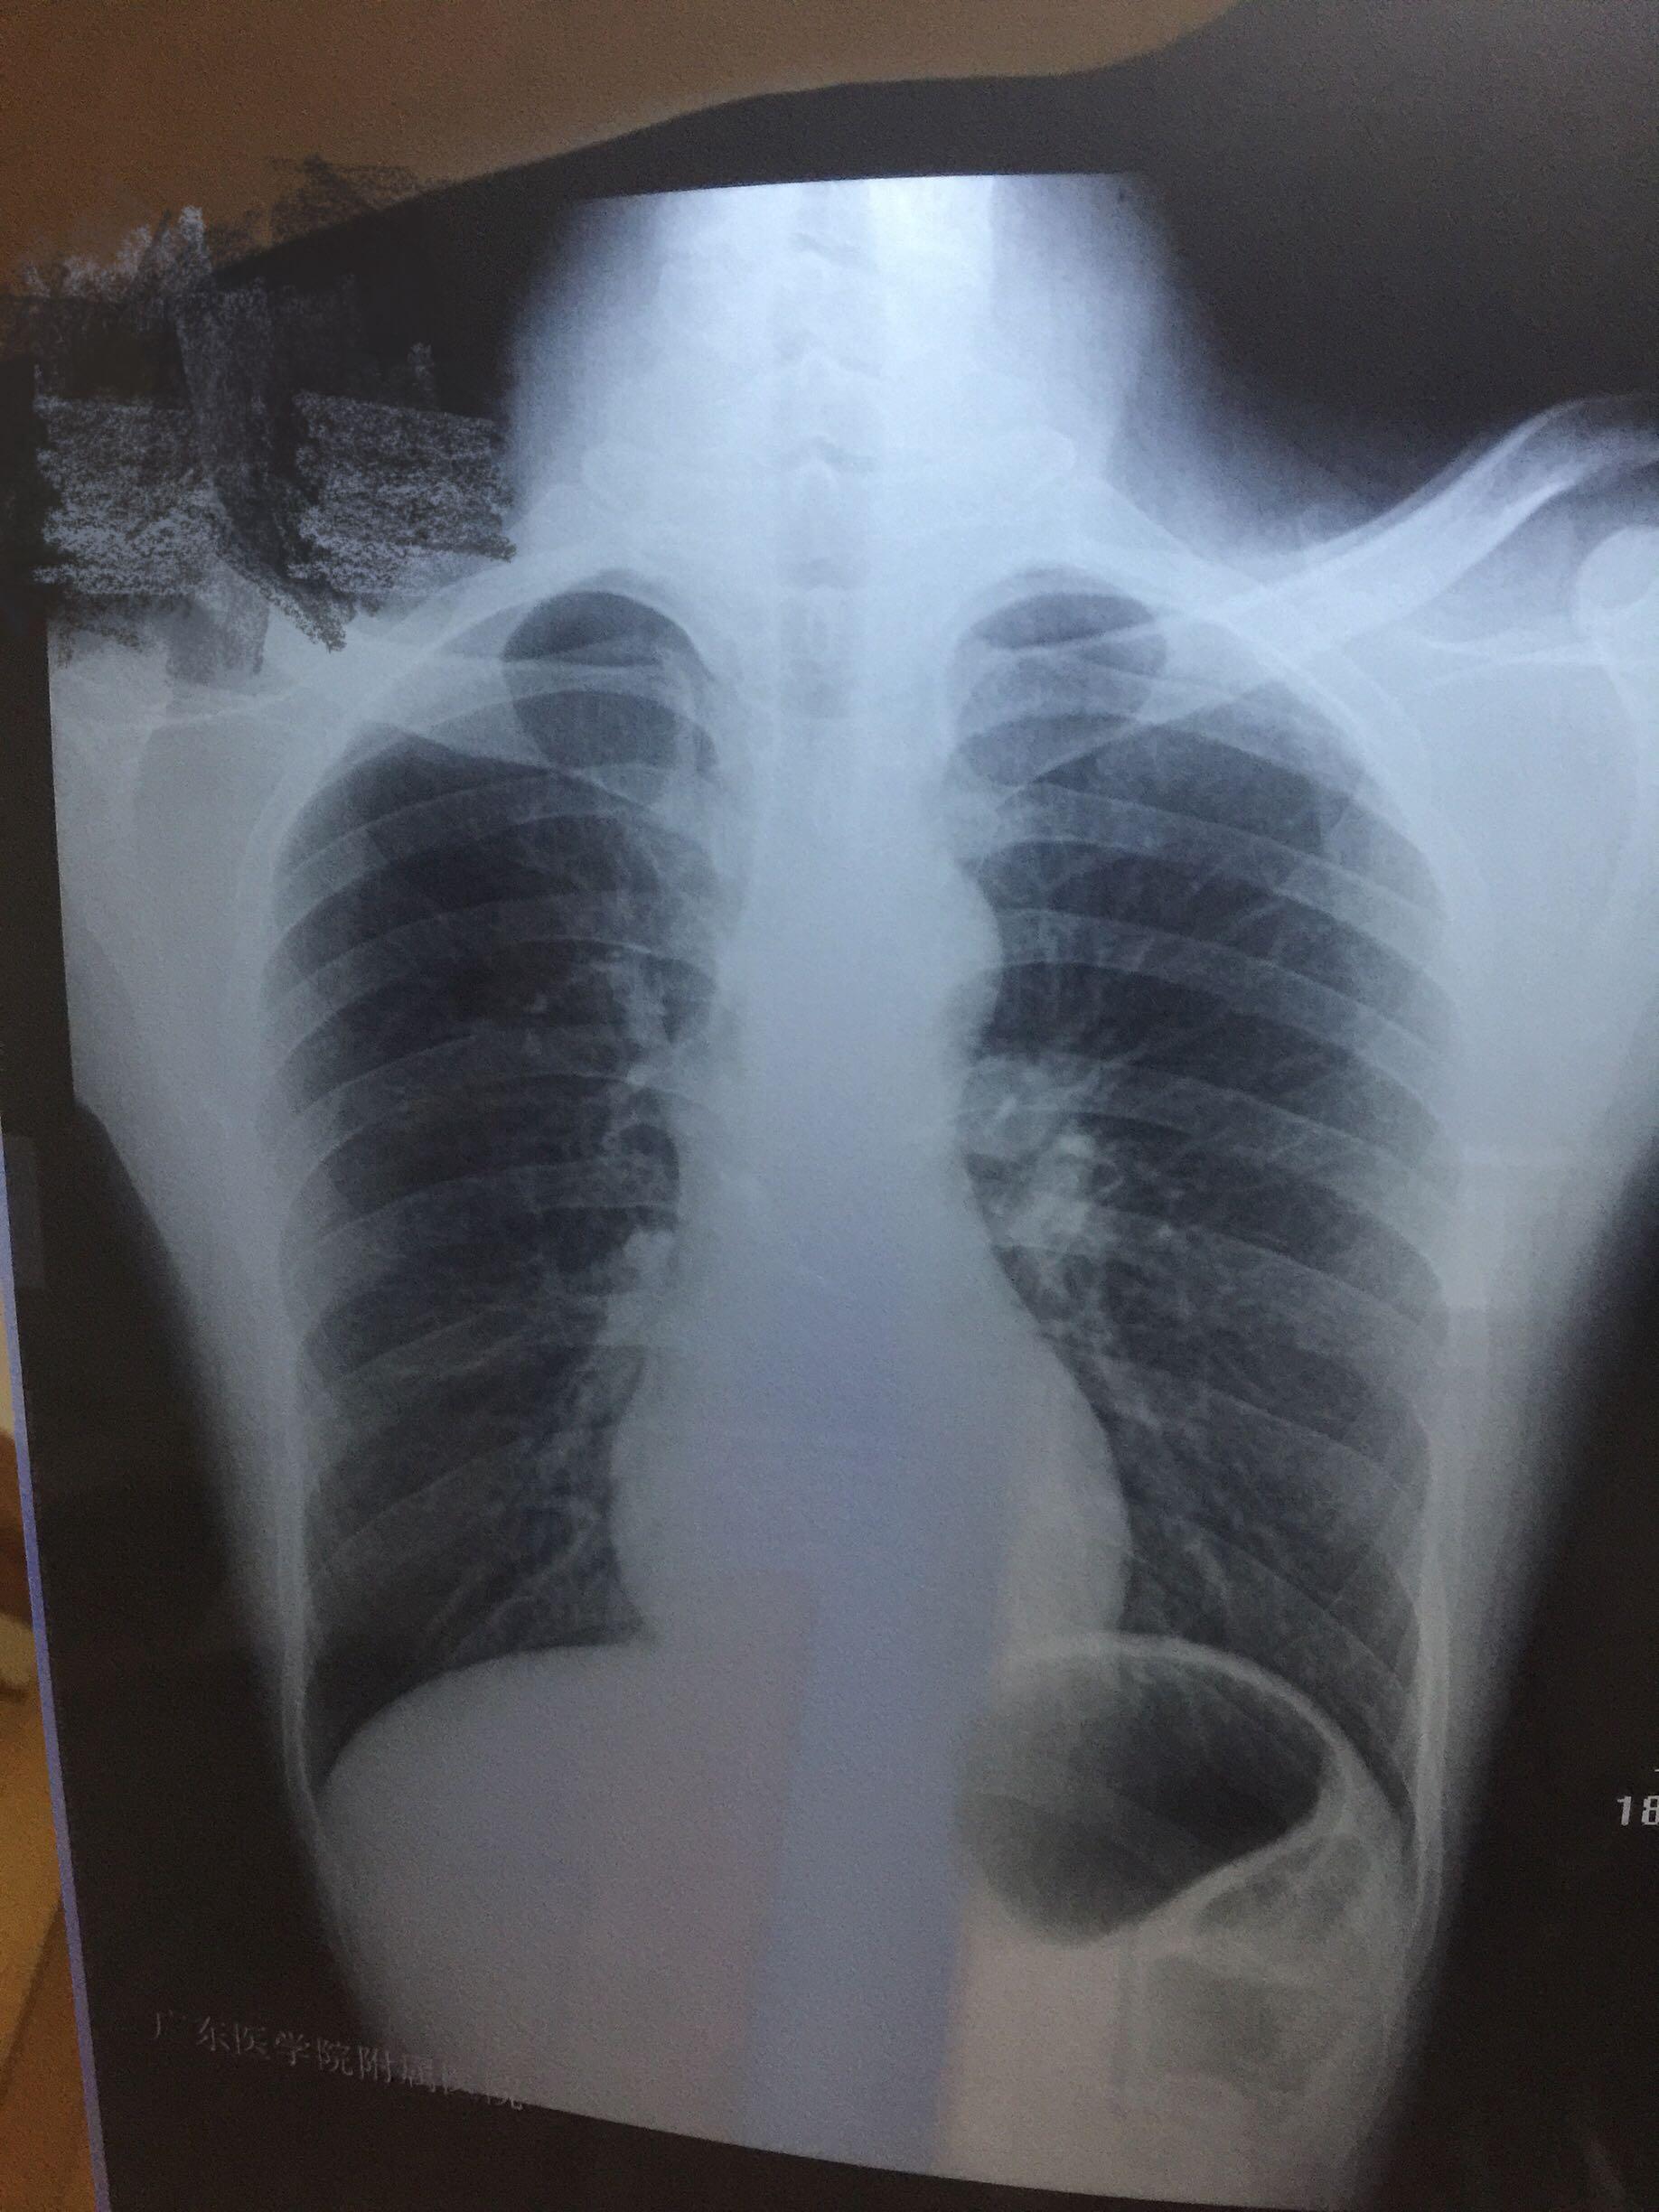 x片结果双肺纹理增粗左侧肺门稍浓